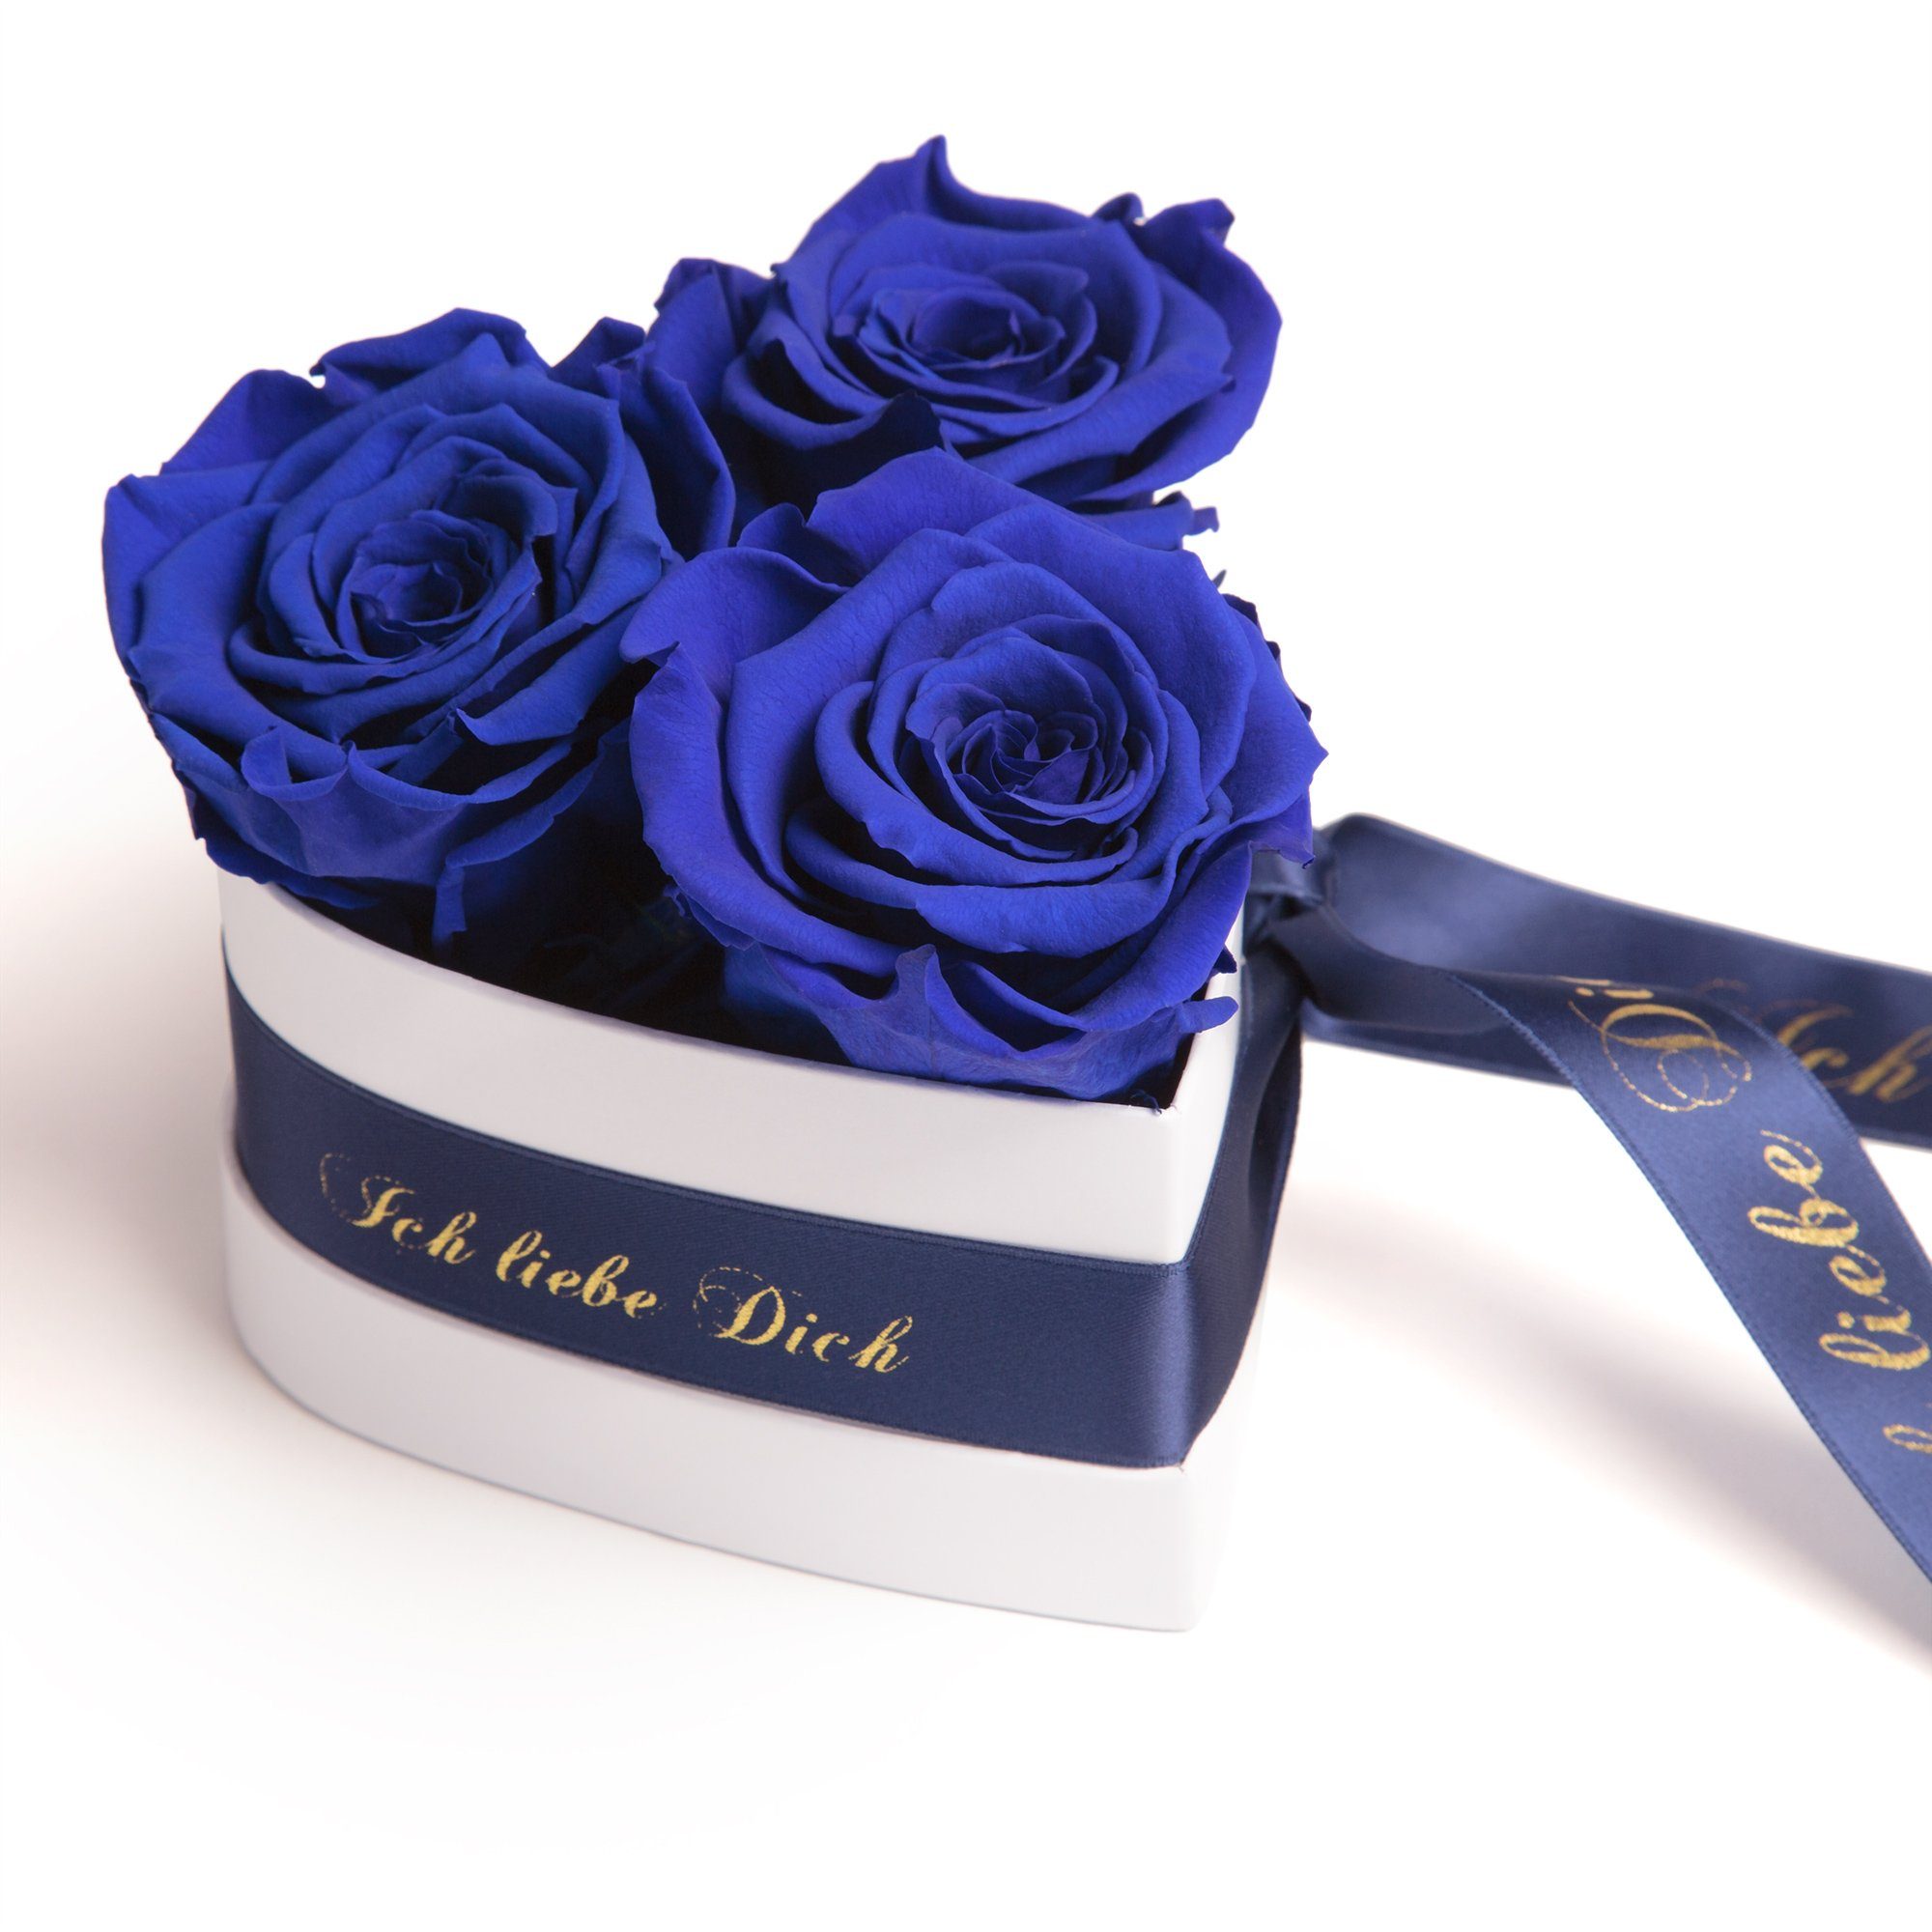 Kunstblume Rosenbox Herz 3 infinity Rosen Ich liebe Dich Geschenk für Sie Rose, ROSEMARIE SCHULZ Heidelberg, Höhe 10 cm, Liebesbeweis Valentinstag blau